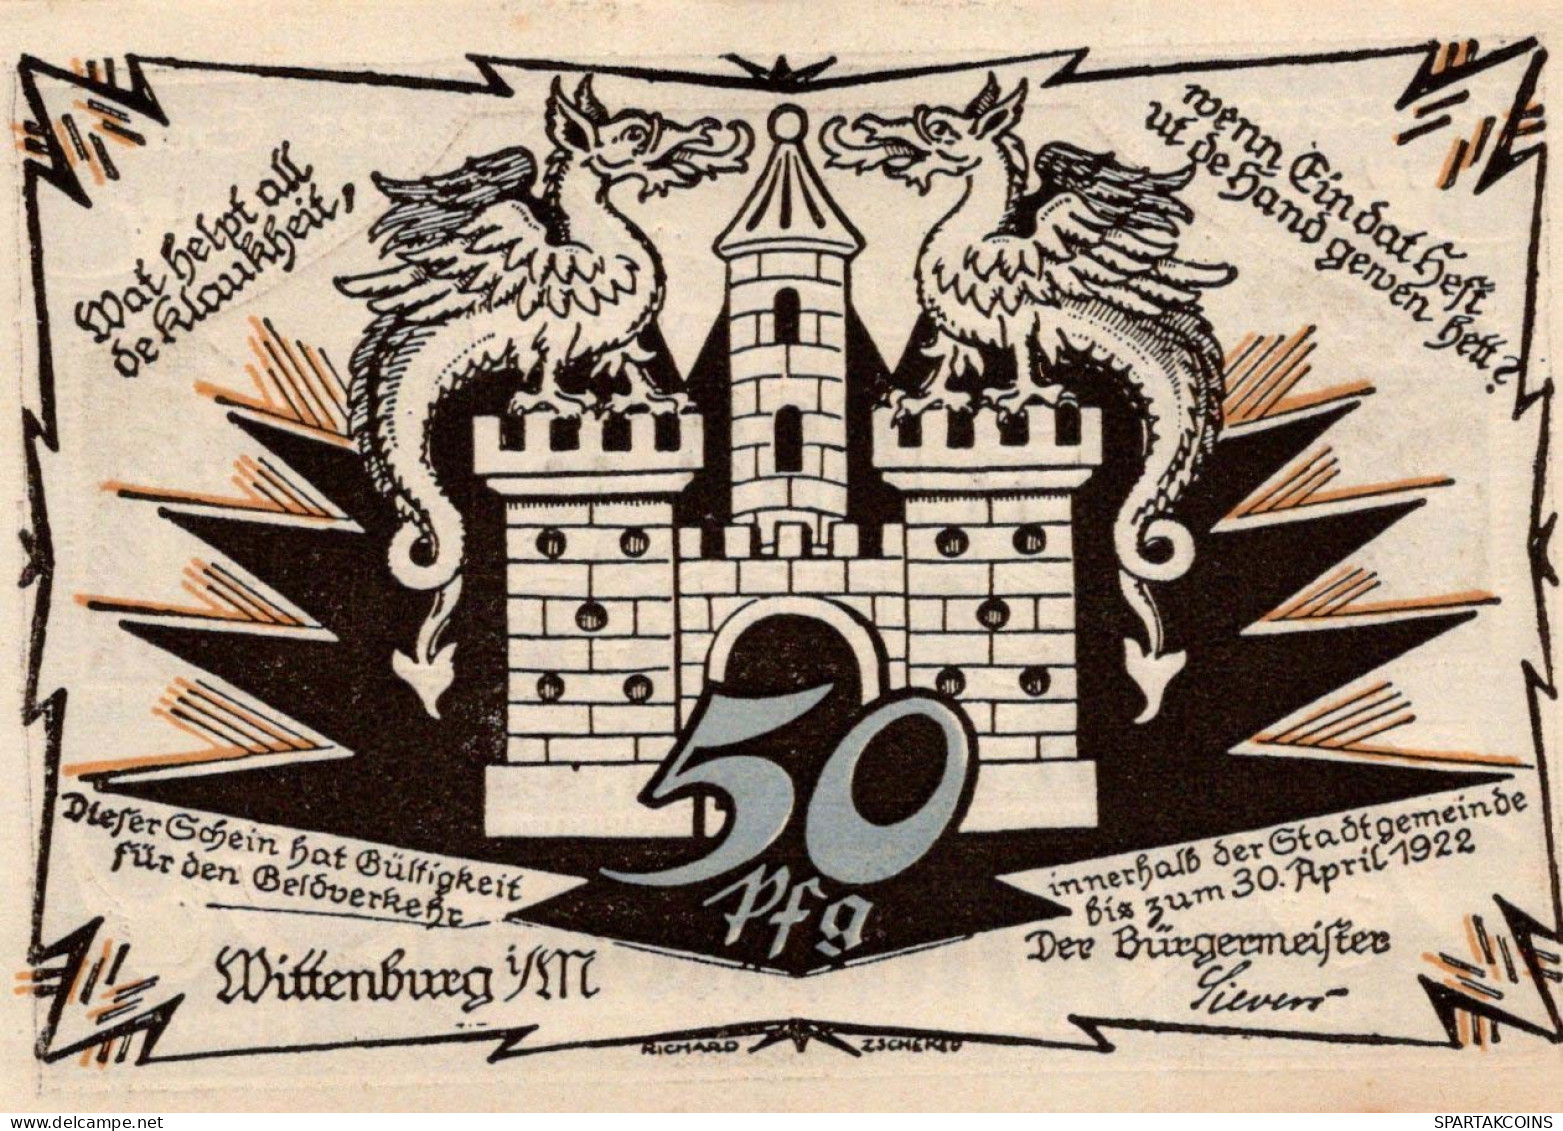 50 PFENNIG 1922 Stadt WITTENBURG Mecklenburg-Schwerin UNC DEUTSCHLAND #PJ060 - [11] Local Banknote Issues